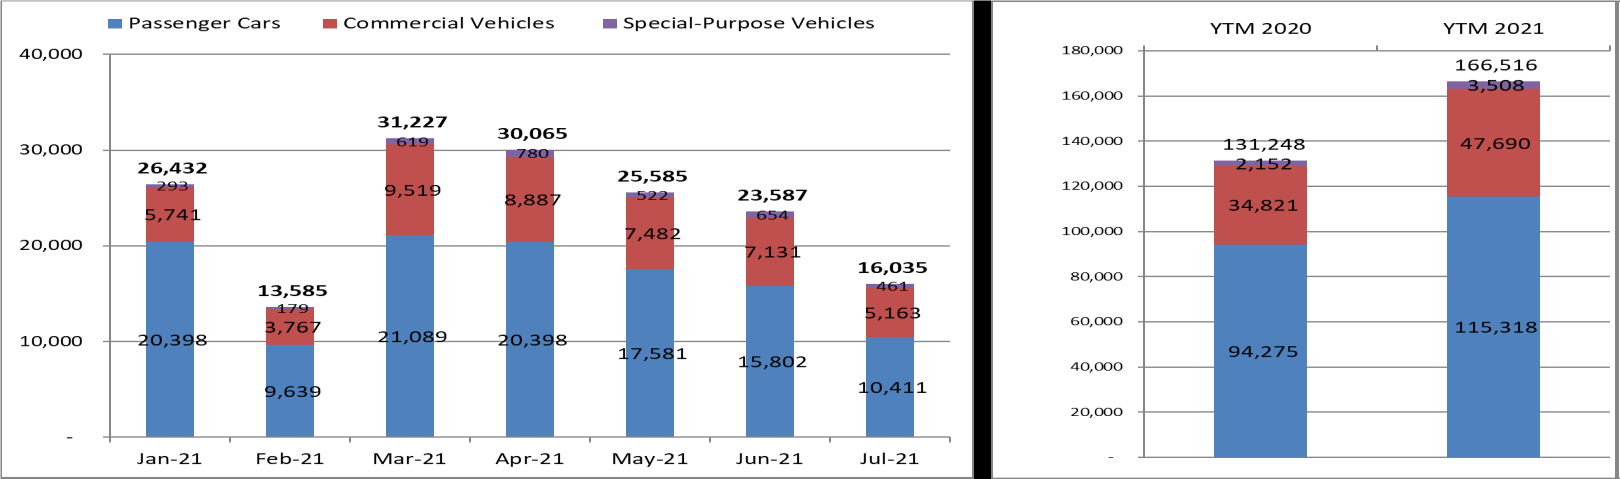 Bất chấp Covid-19, sản lượng tiêu thụ ô tô tháng 7 tăng 33% so với cùng kỳ năm 2020